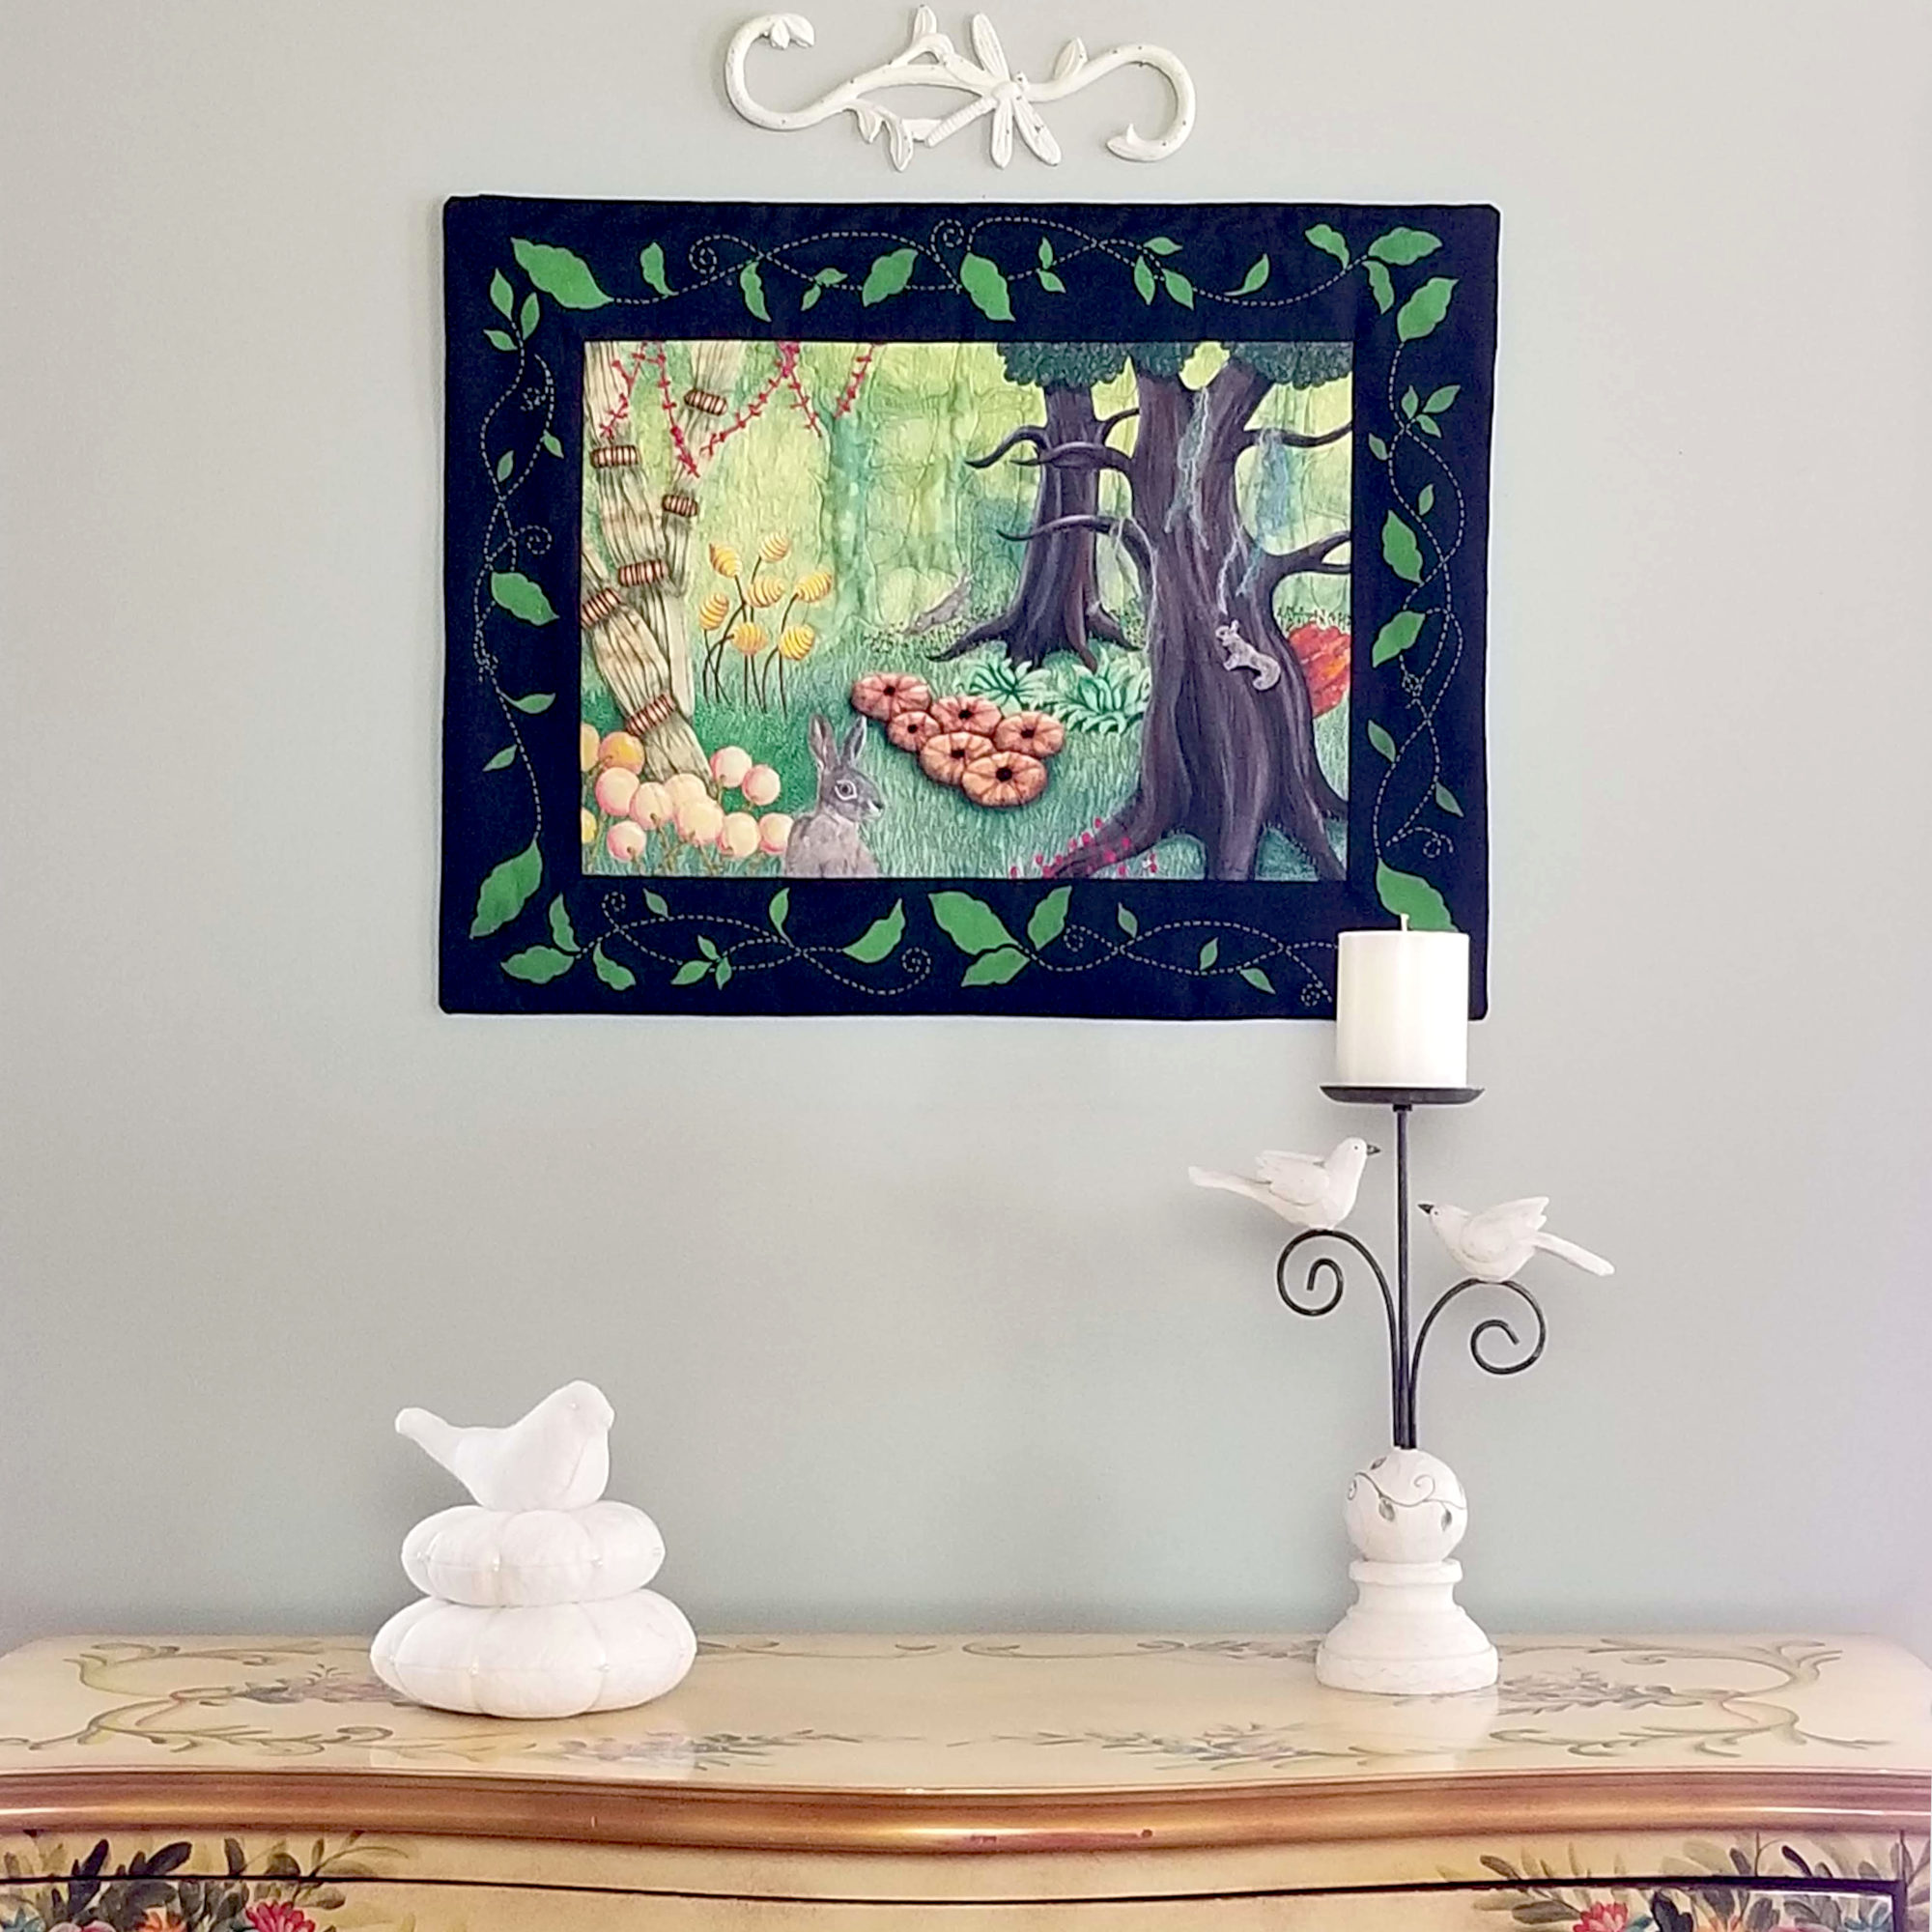 Tableau d'art textile Cache-cache sur un mur au-dessus d'un buffet où il y a un oiseau sur un nid et un chandelier avec des oiseaux. L'œuvre montre une scène de 2 lièvres et un écureuil jouant à cache-cache dans une forêt enchantée.